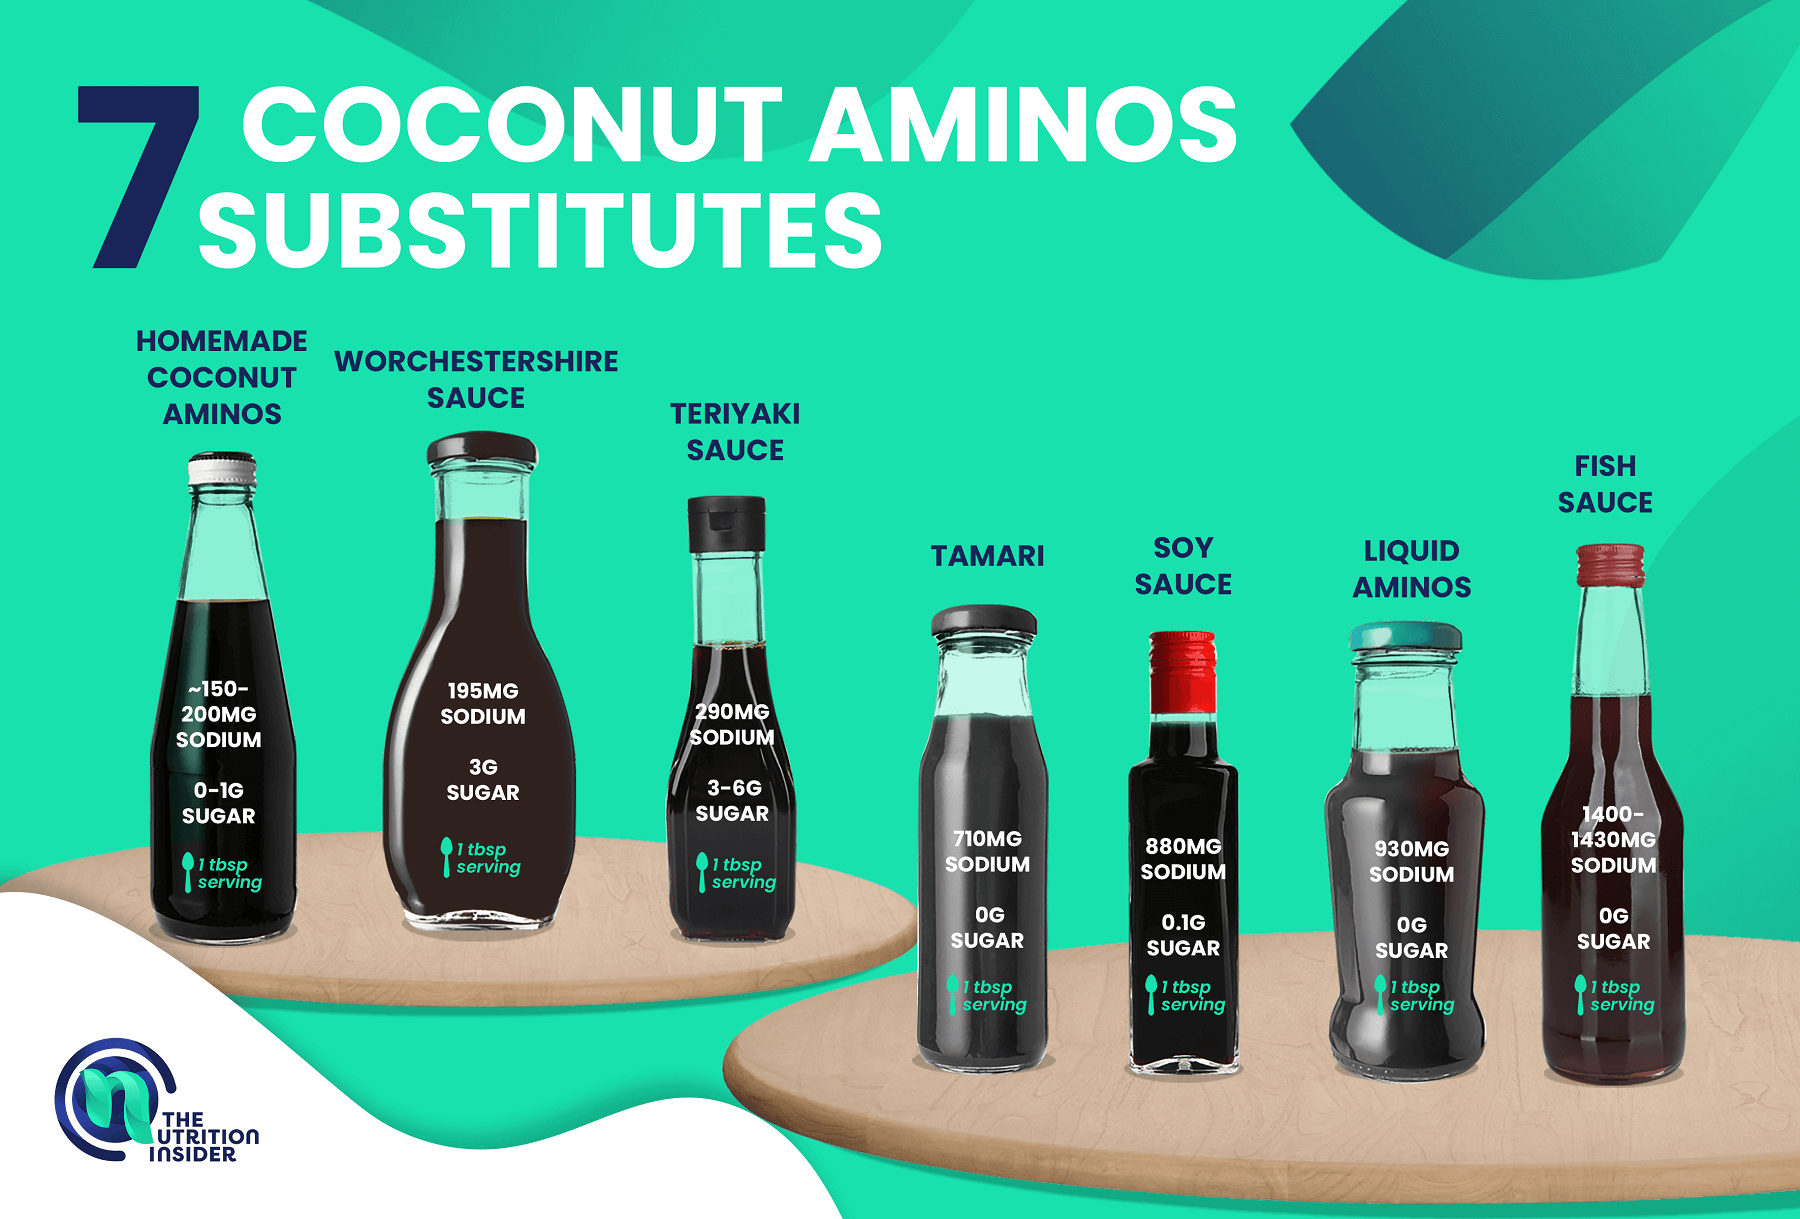 7 Coconut Aminos Substitutes